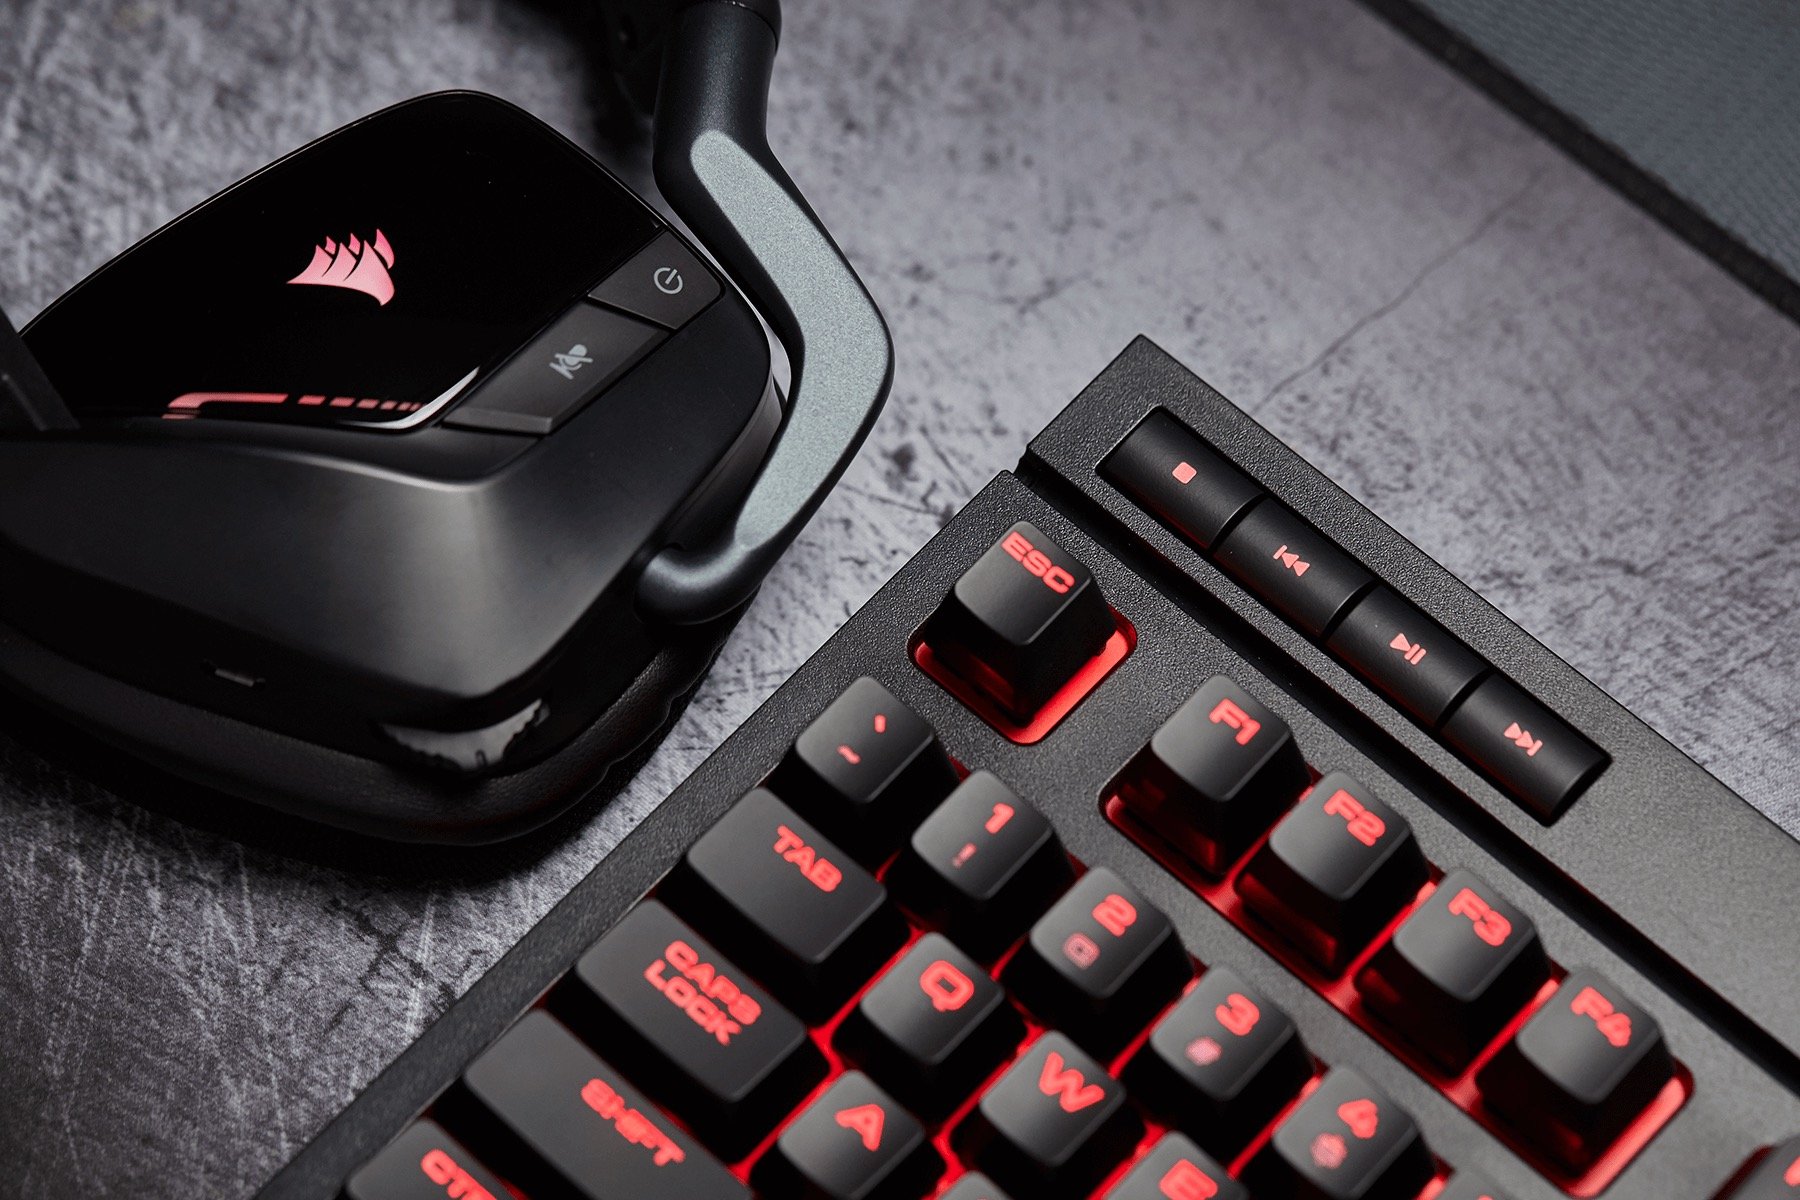 Image 11 : K63 : premier clavier gaming Corsair Cherry MX à moins de 100 euros